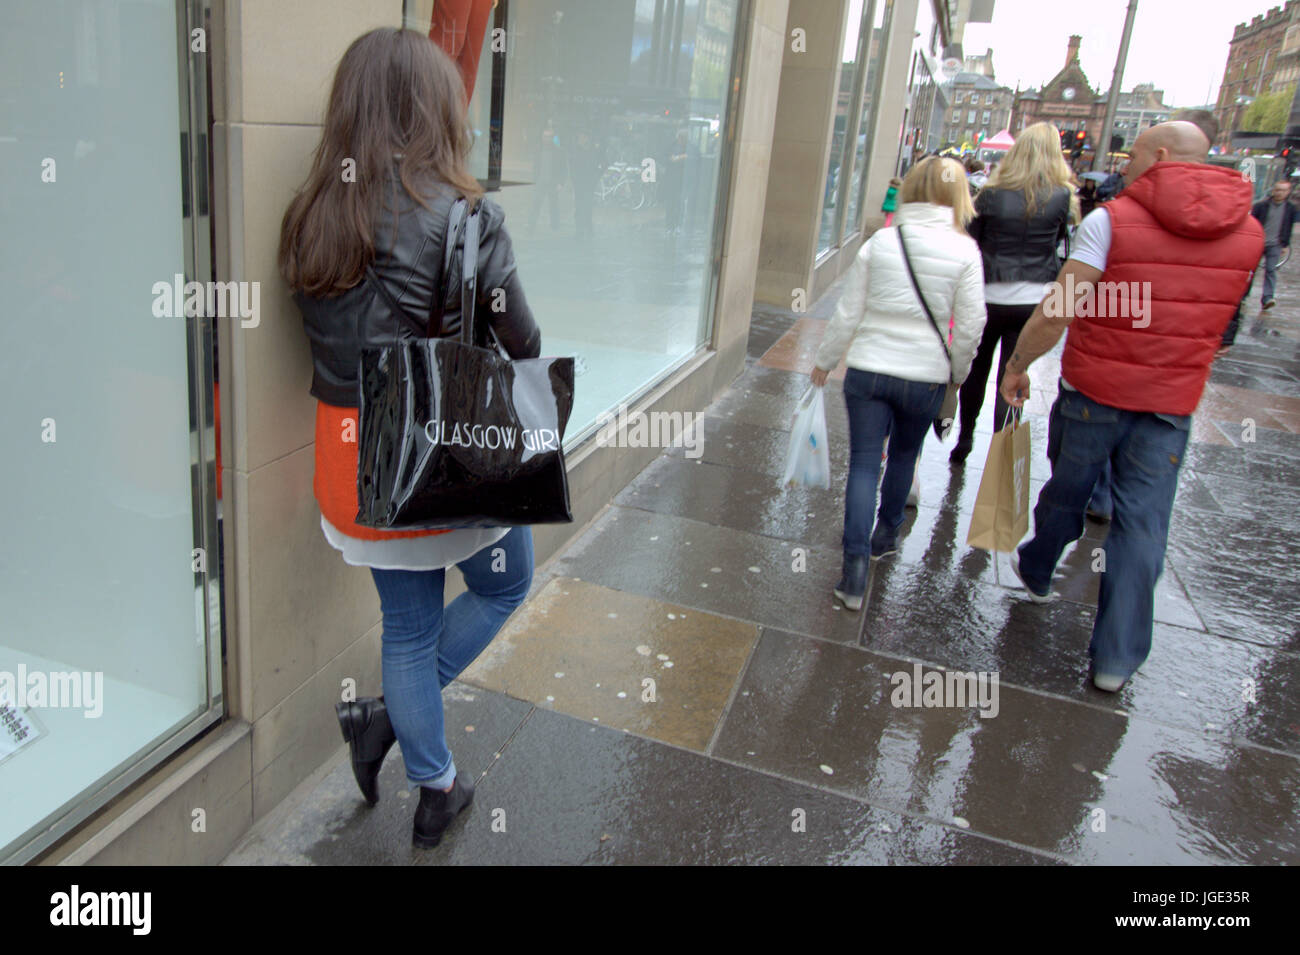 Straße von Glasgow Buchanan Street Shopper Glasgow Mädchen Tasche Teenager Wand gelehnt Stockfoto